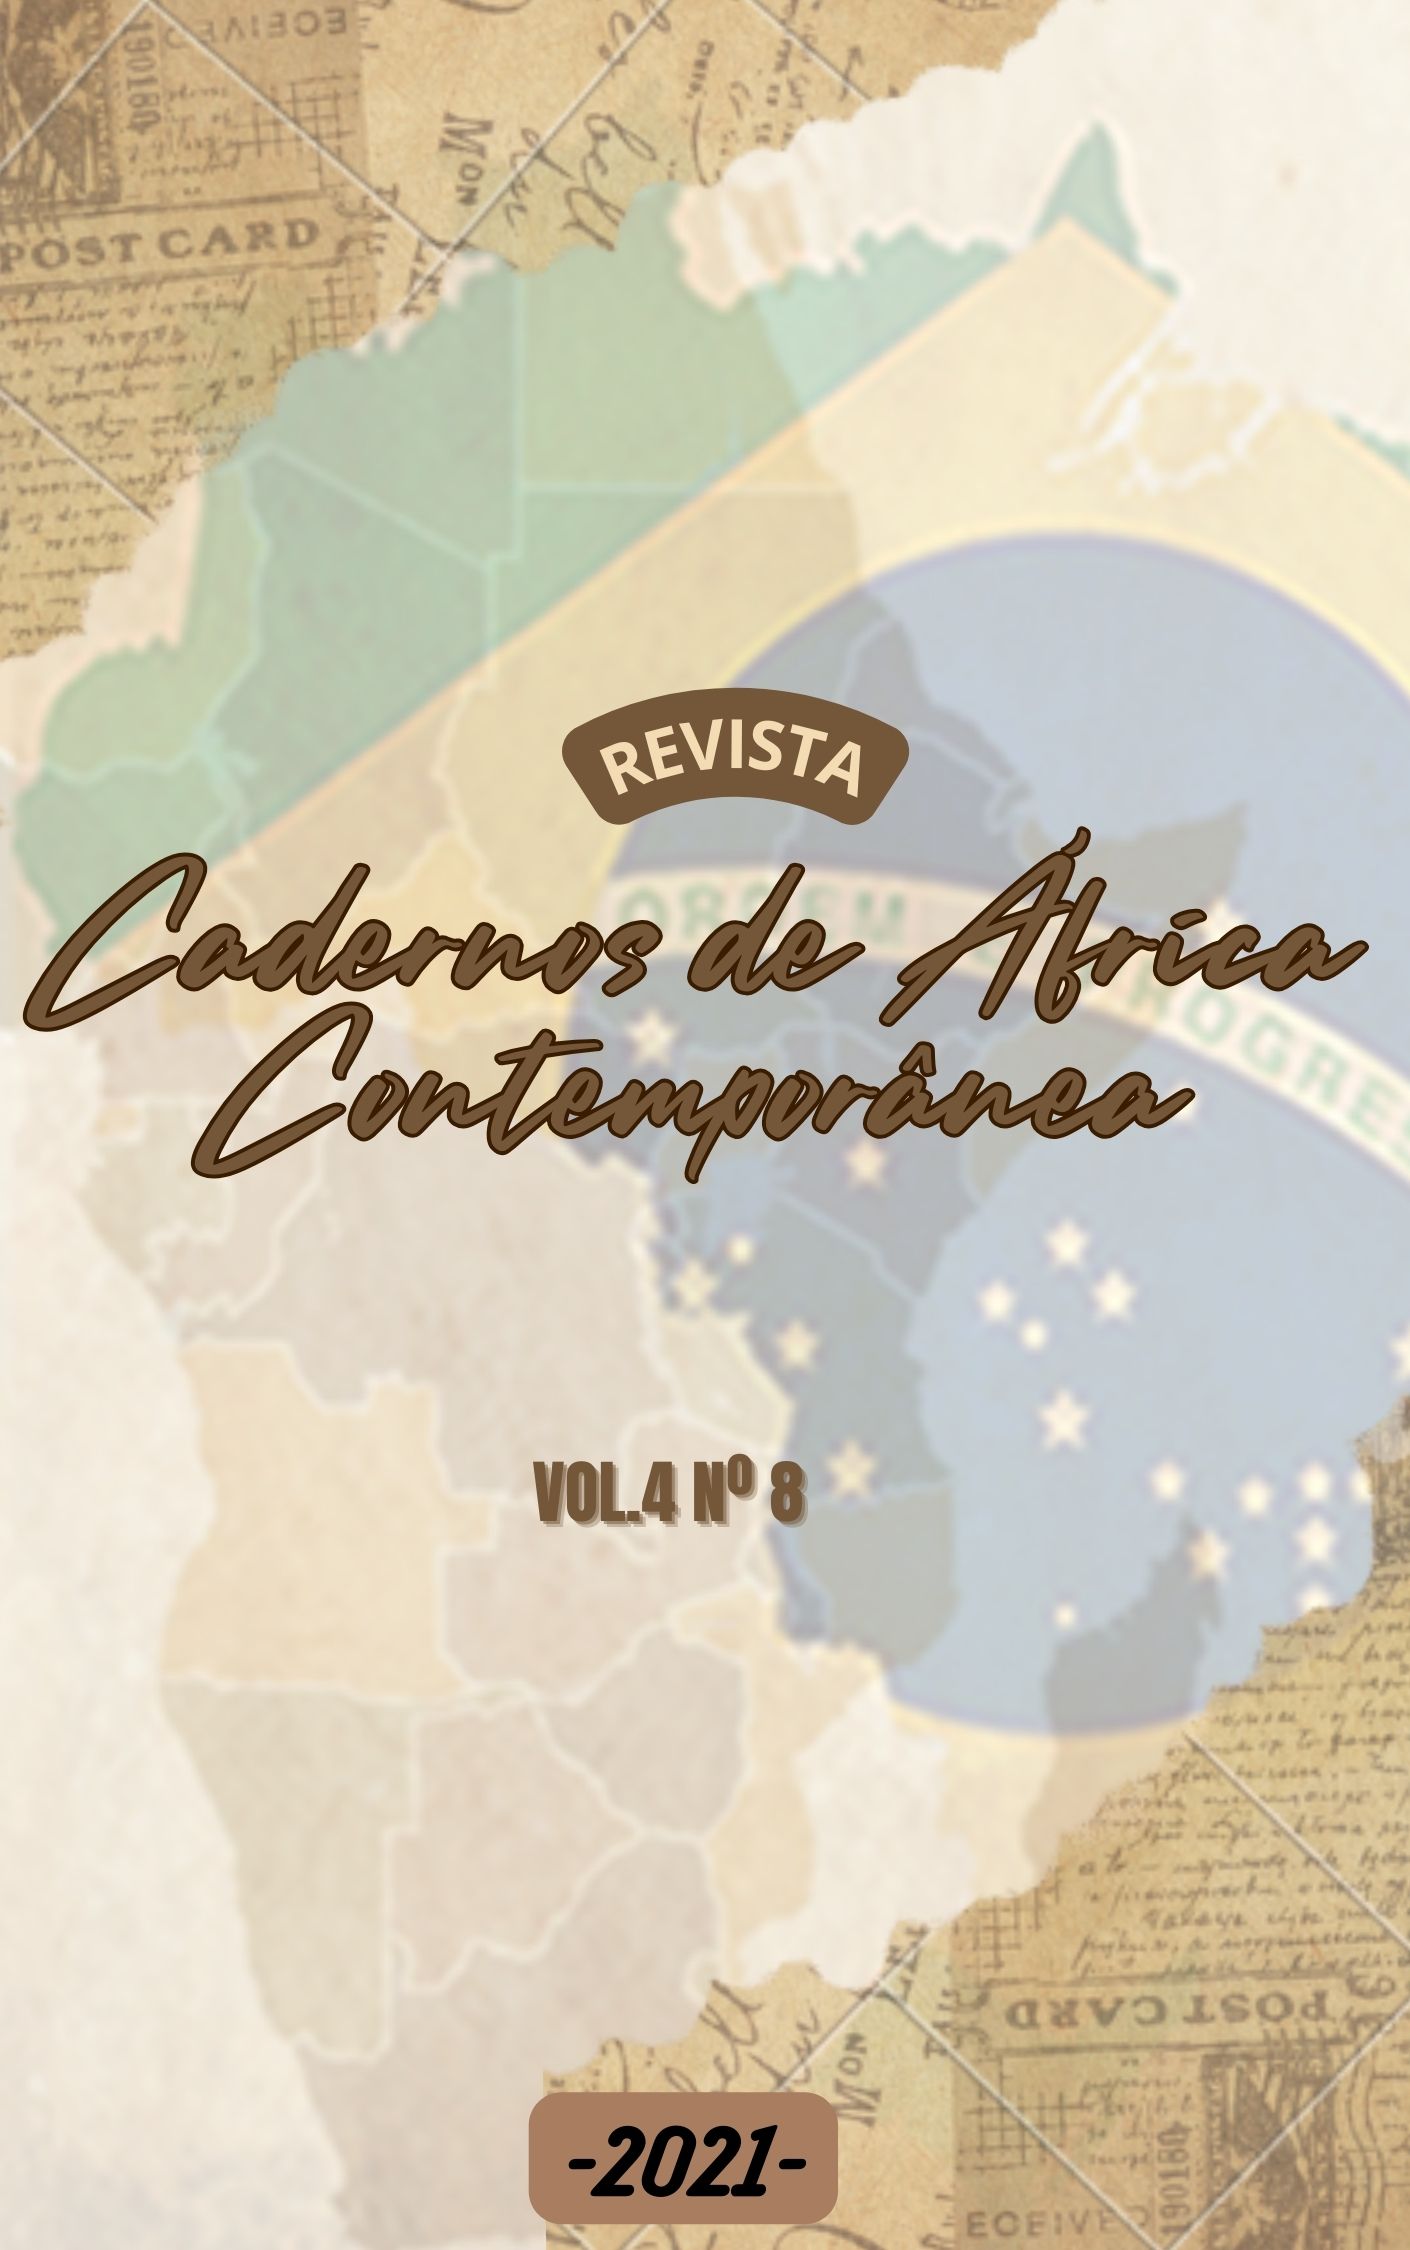 					Visualizar v. 4 n. 8 (2021): Cadernos de África Contemporânea
				